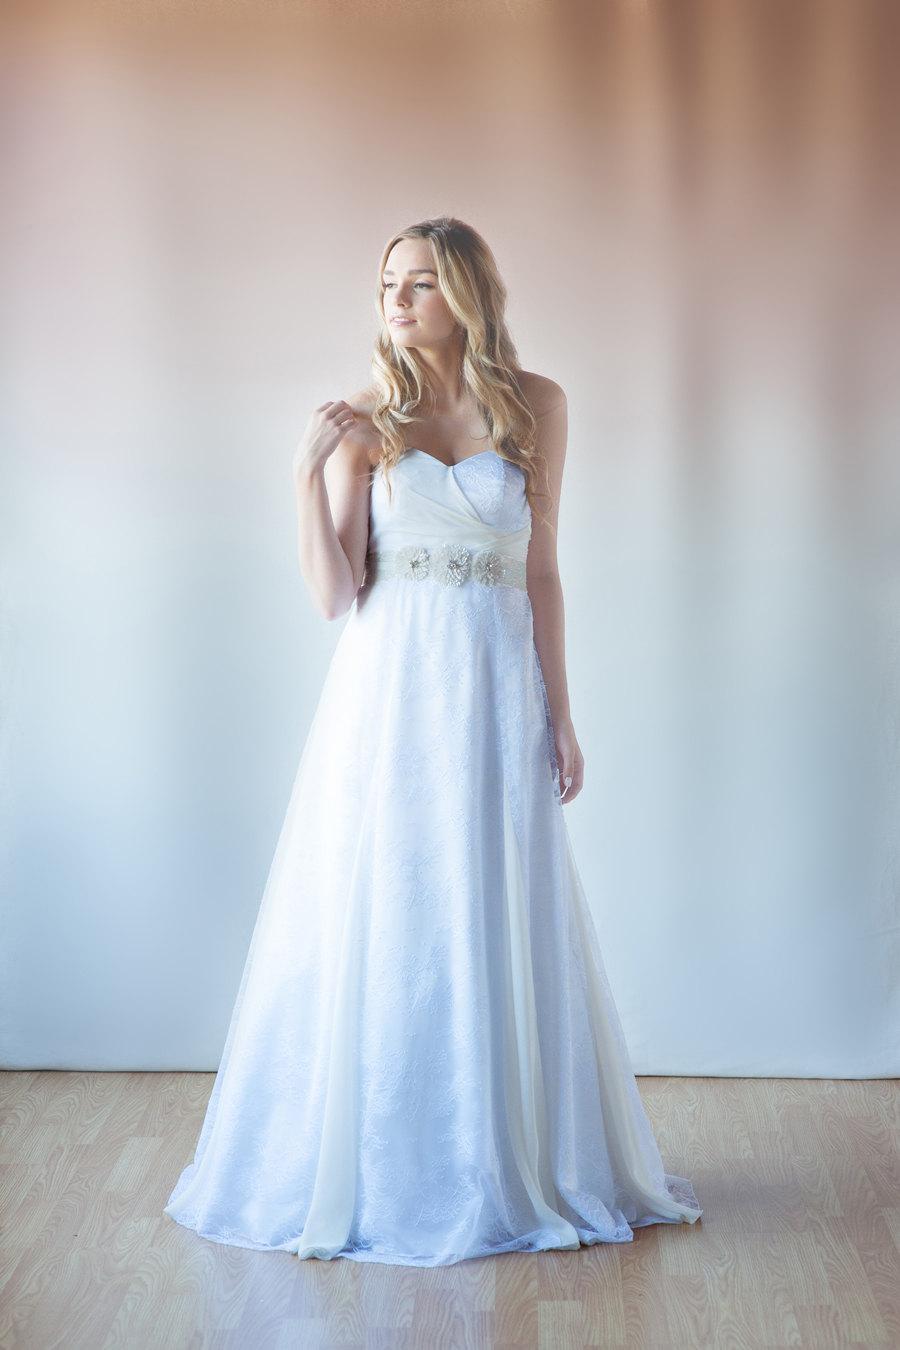 Hochzeit - French lace bridal dress, beach wedding dress, wedding gowns, white chiffon, for dreamy beach destination weddings